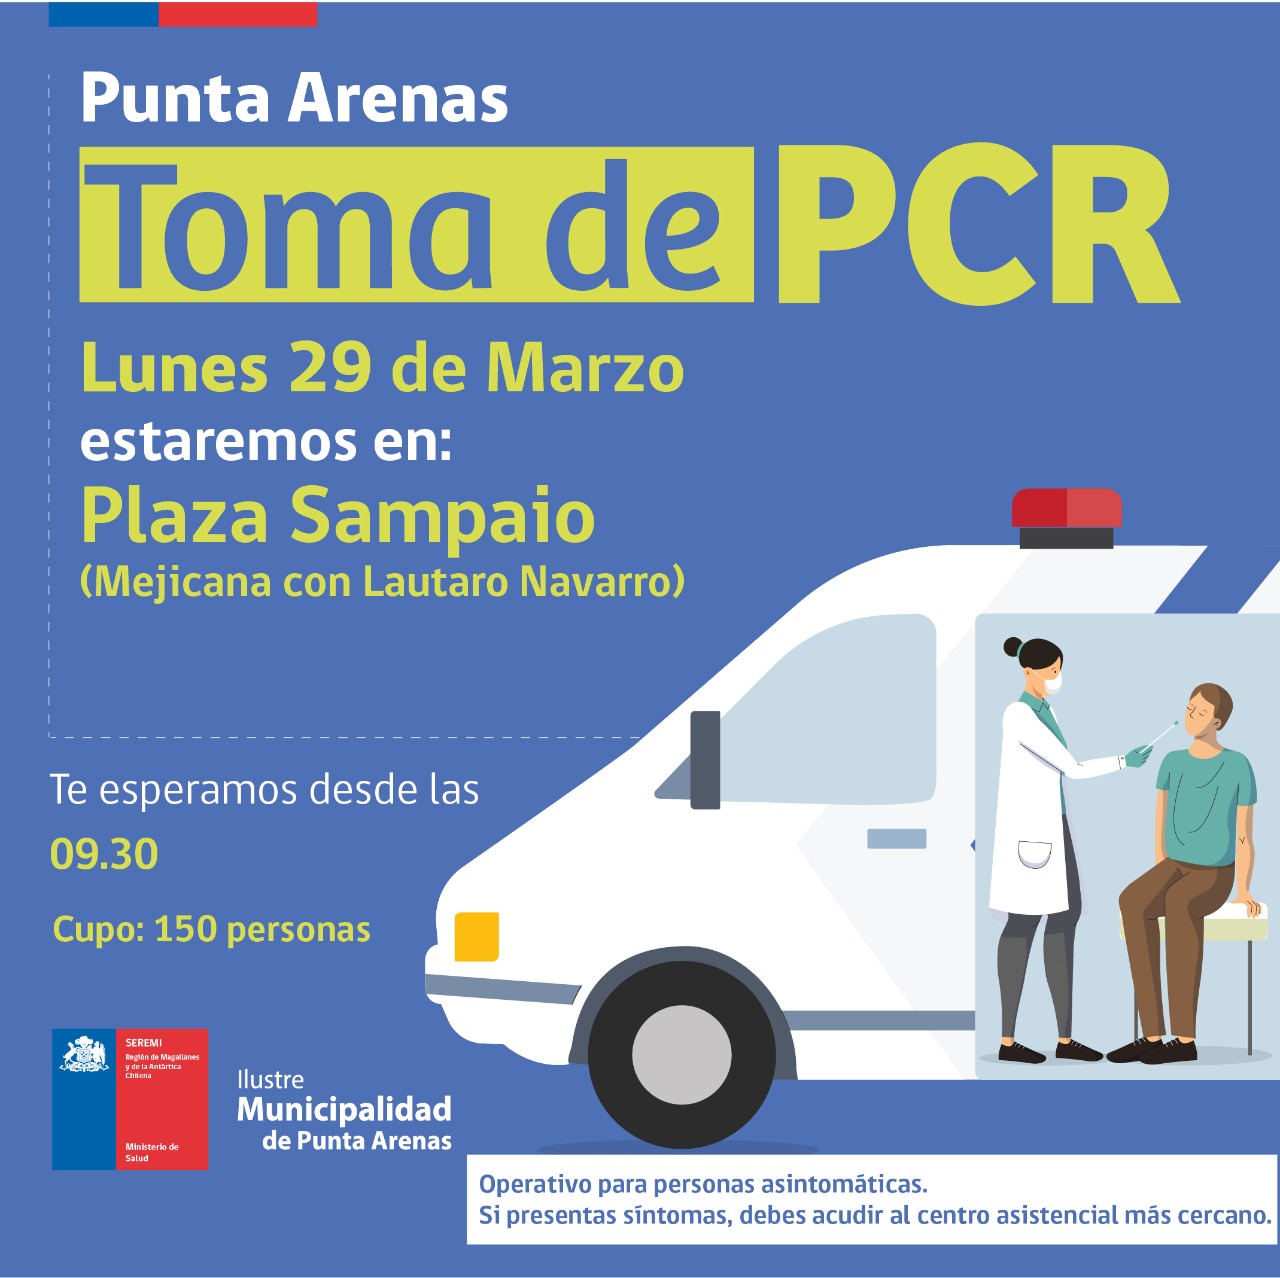 Toma de exámenes PCR continúan este lunes 29 de marzo en Punta Arenas, Porvenir, Puerto Natales y Puerto Williams